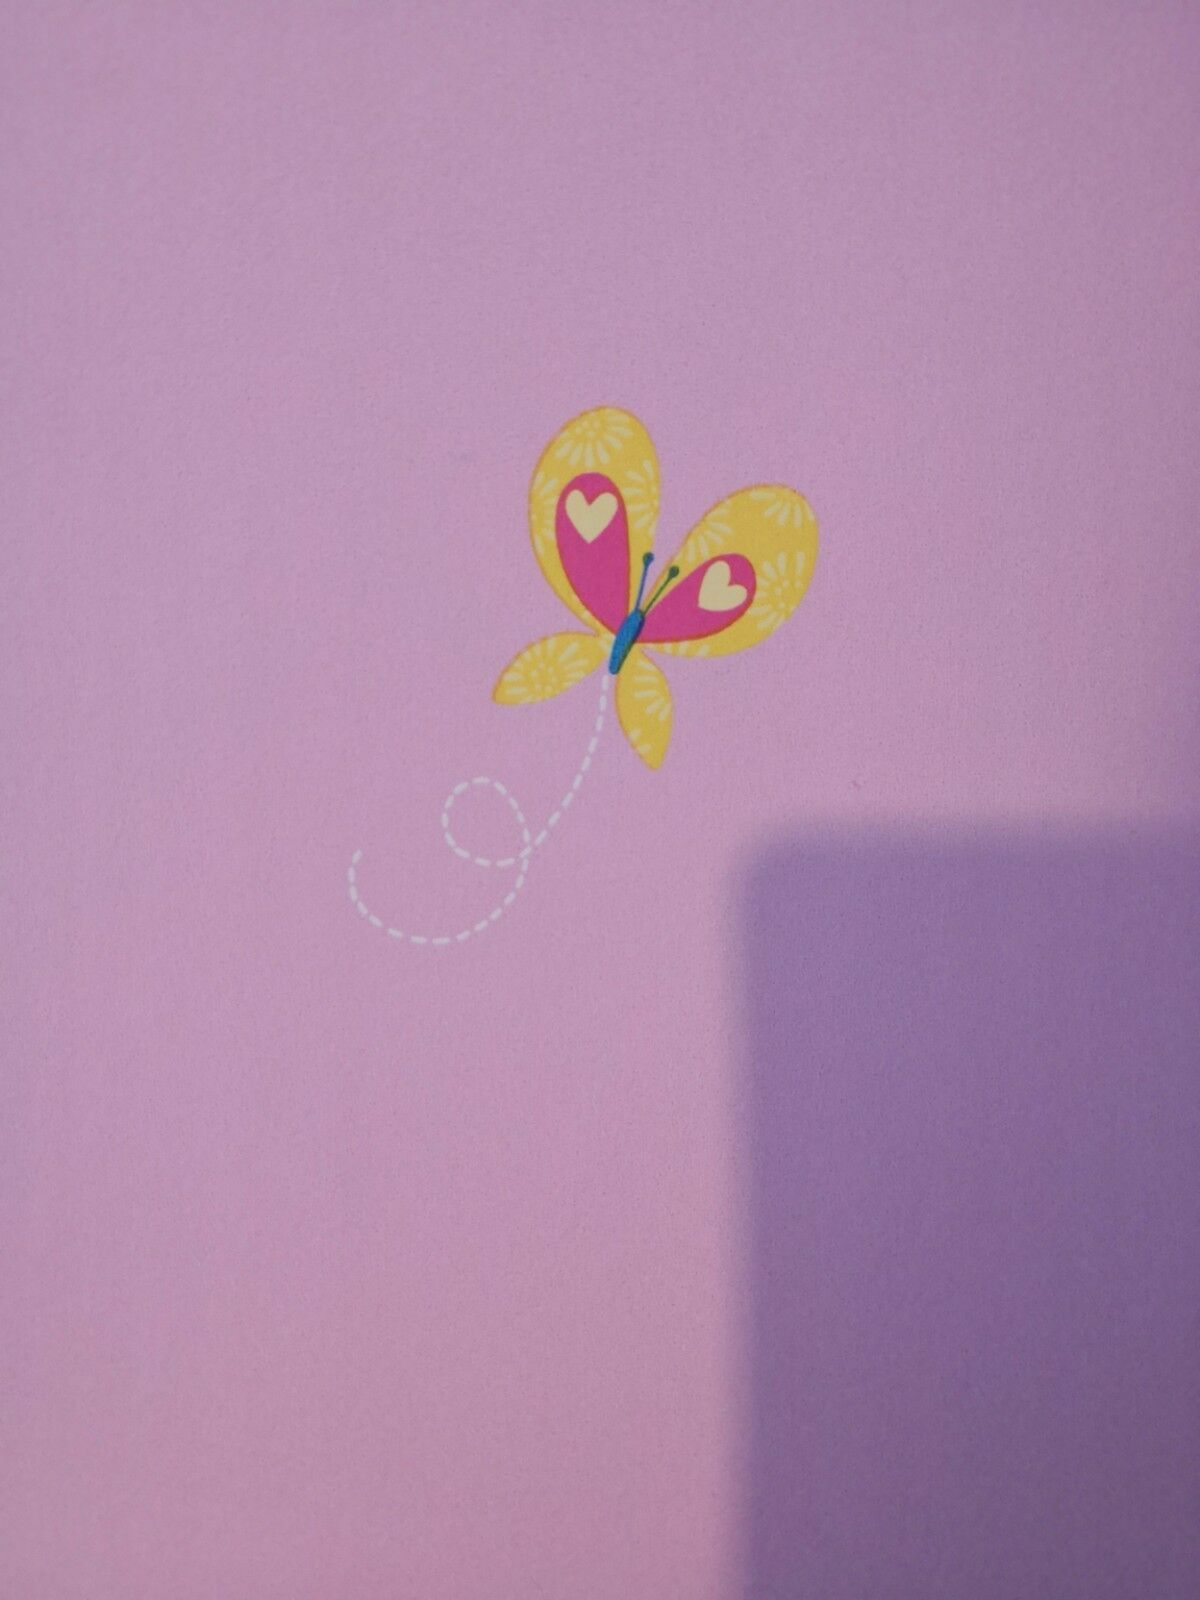 Fun4 Walls Wallpaper 1roll Batch Number 12 Rolls In - Butterfly - HD Wallpaper 